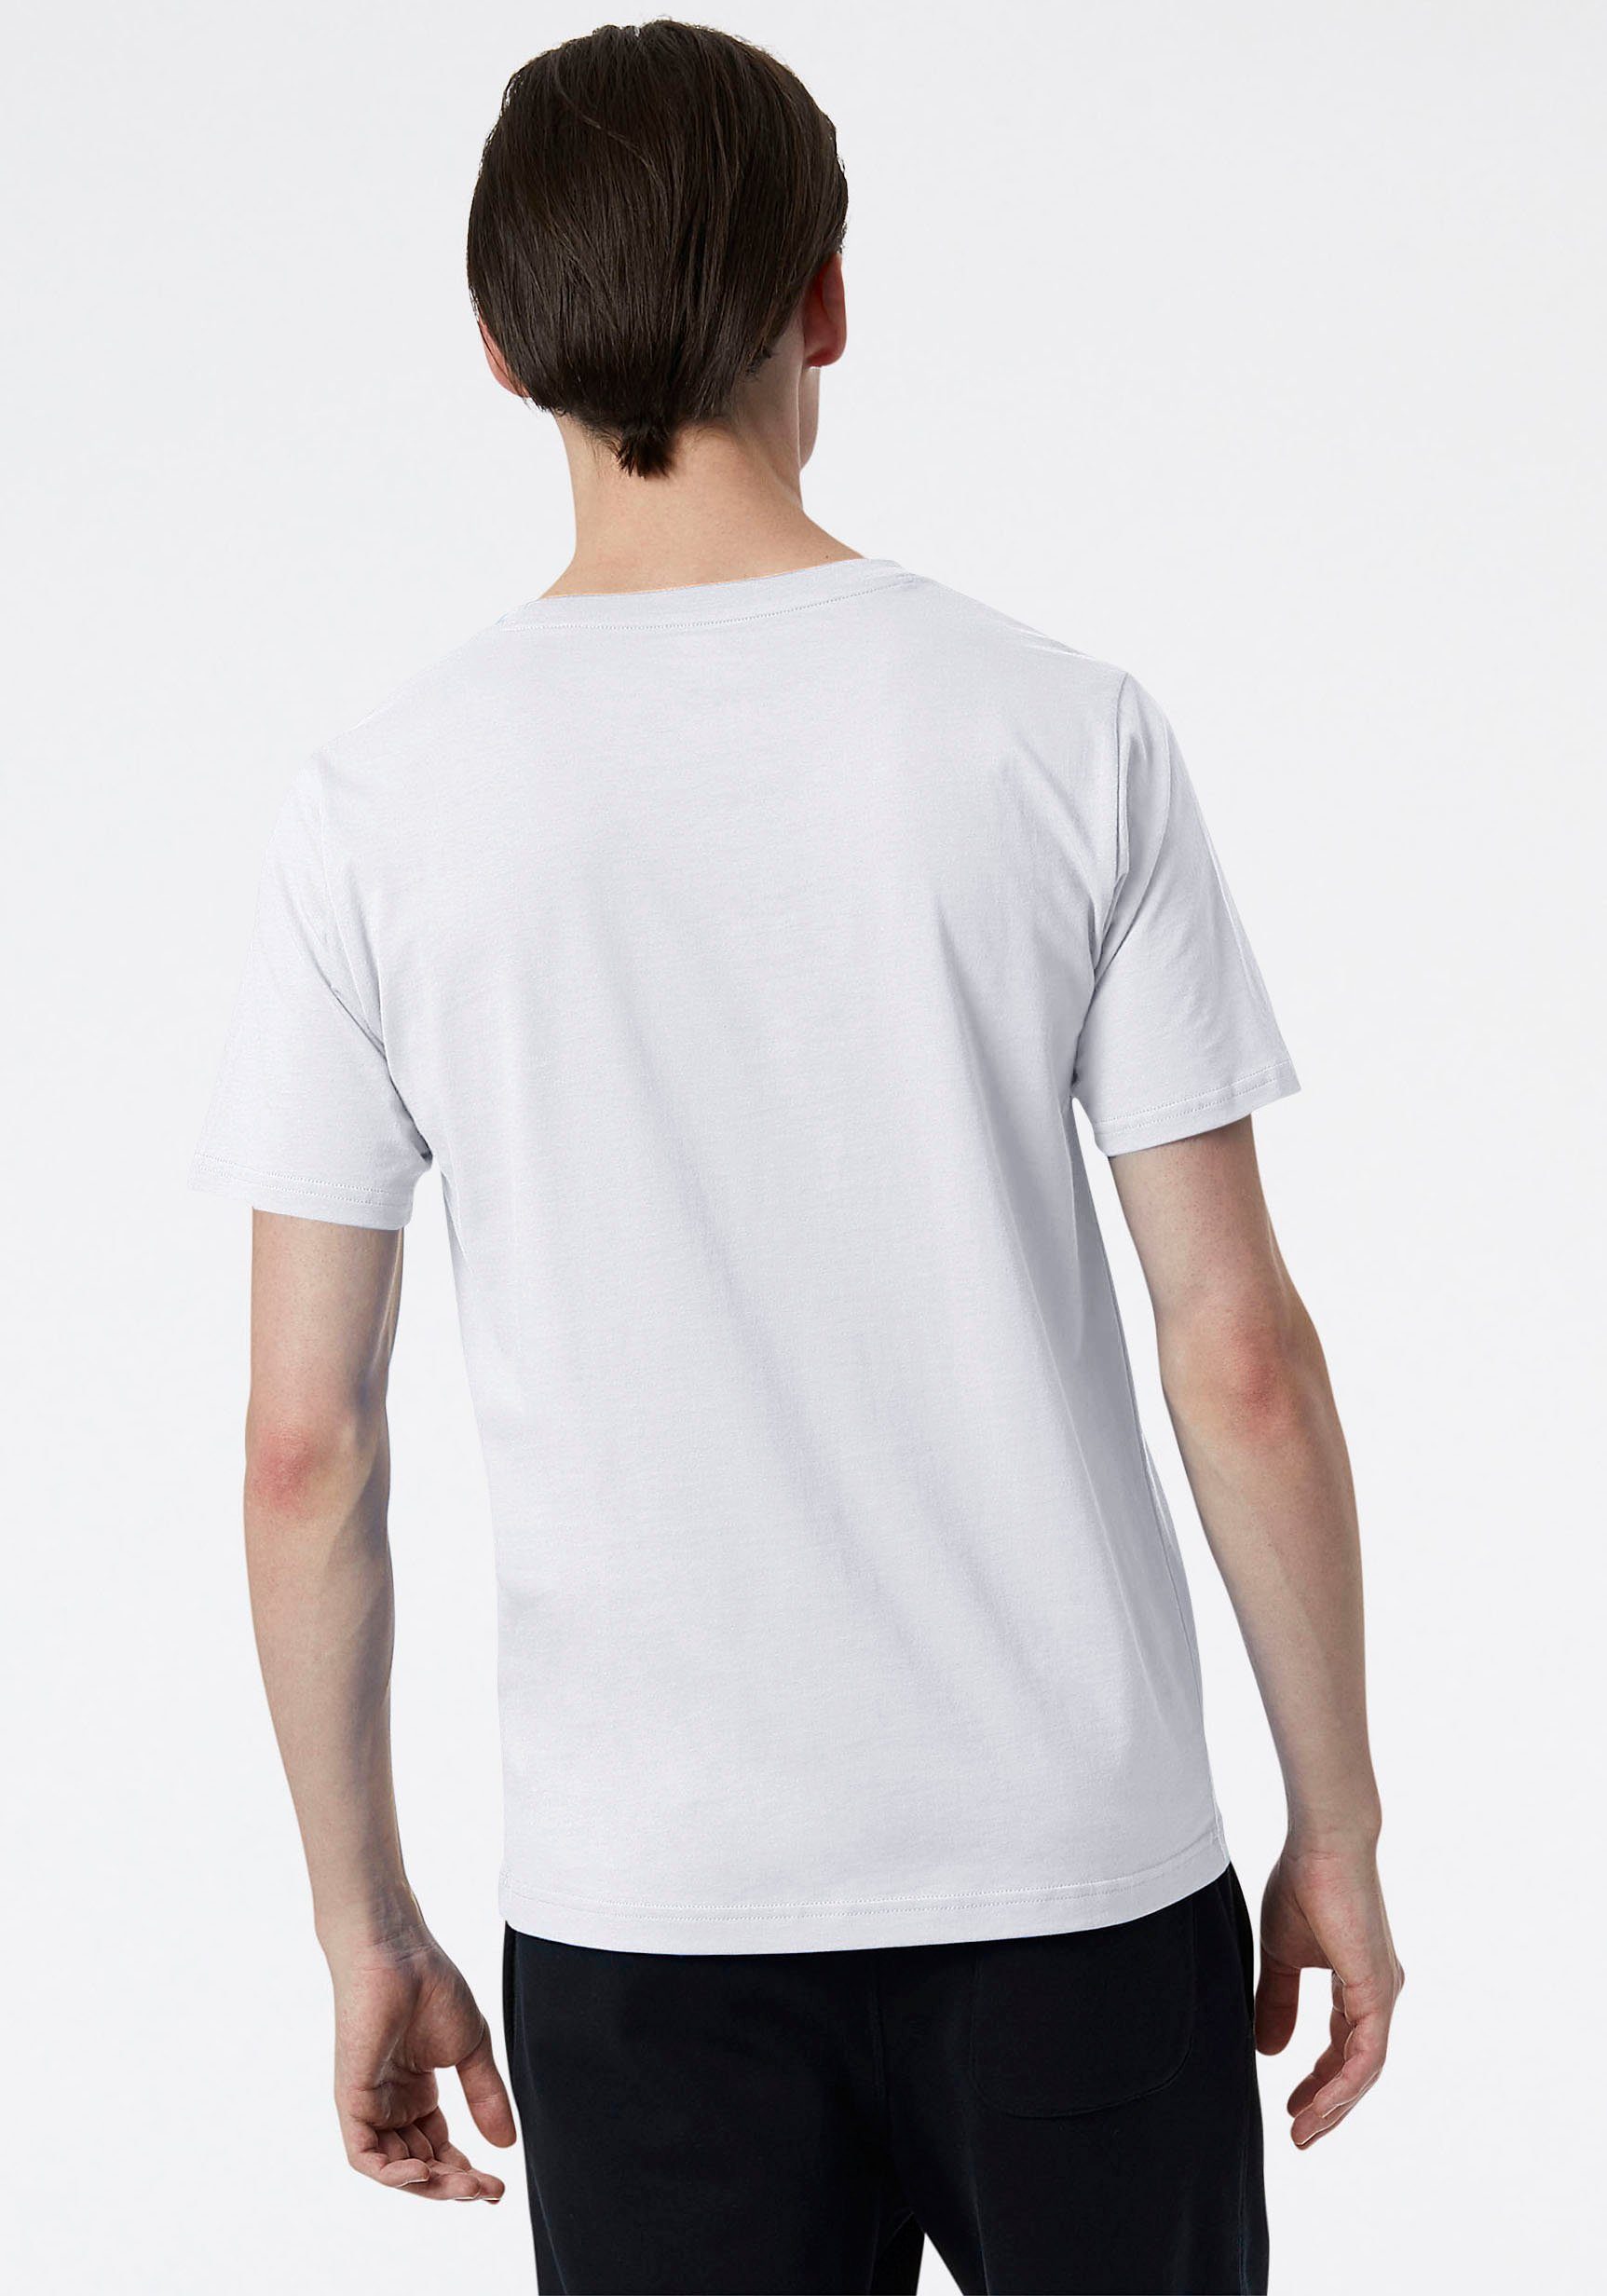 New NB LOGO T-Shirt STACKED weiß T-SHIRT Balance ESSENTIALS